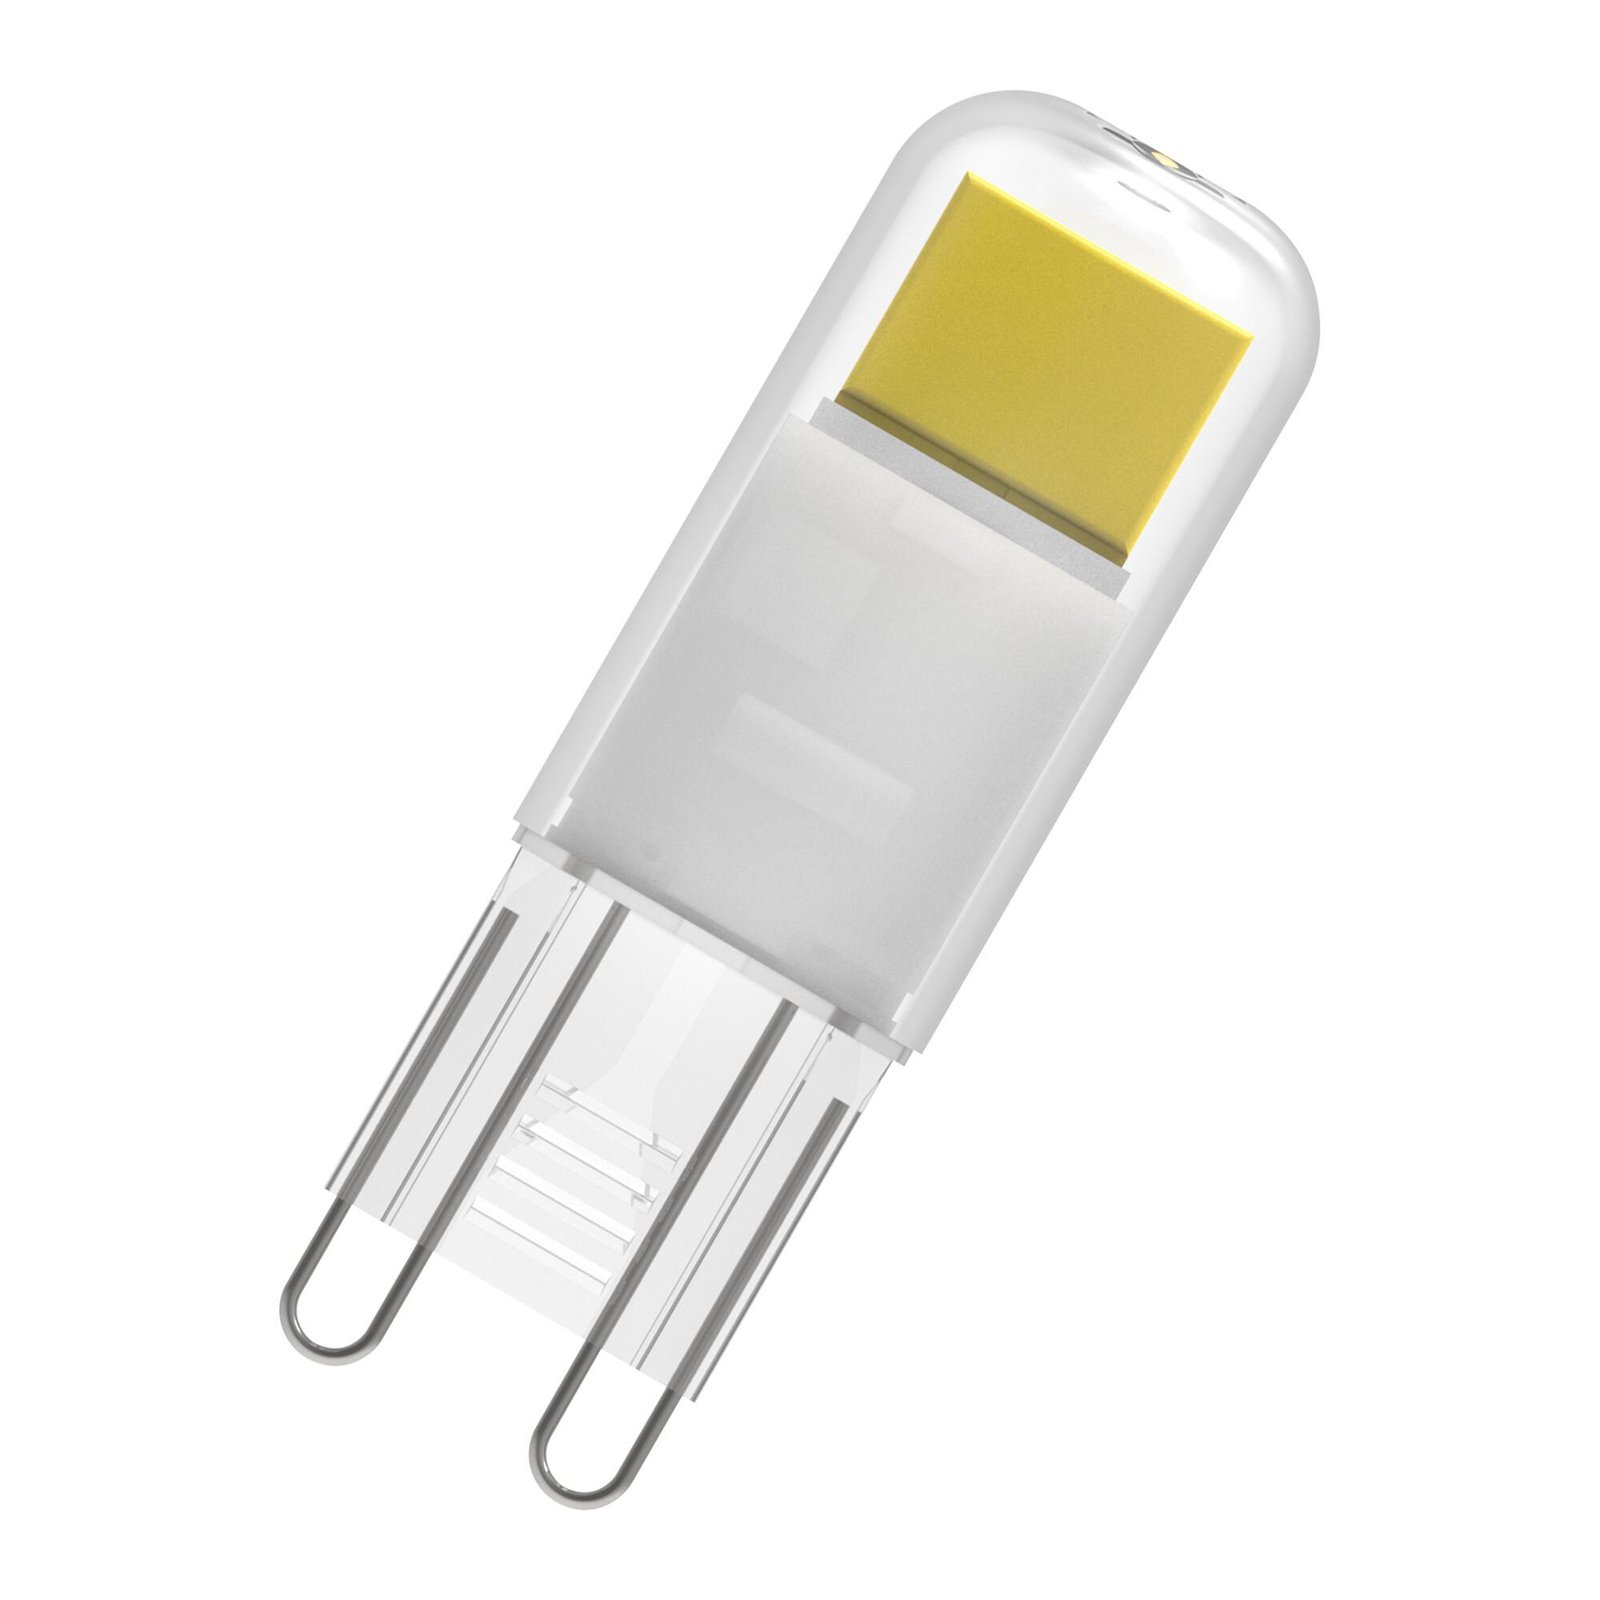 Ampoule à broche LED OSRAM G9 1,8 W claire 2.700 K